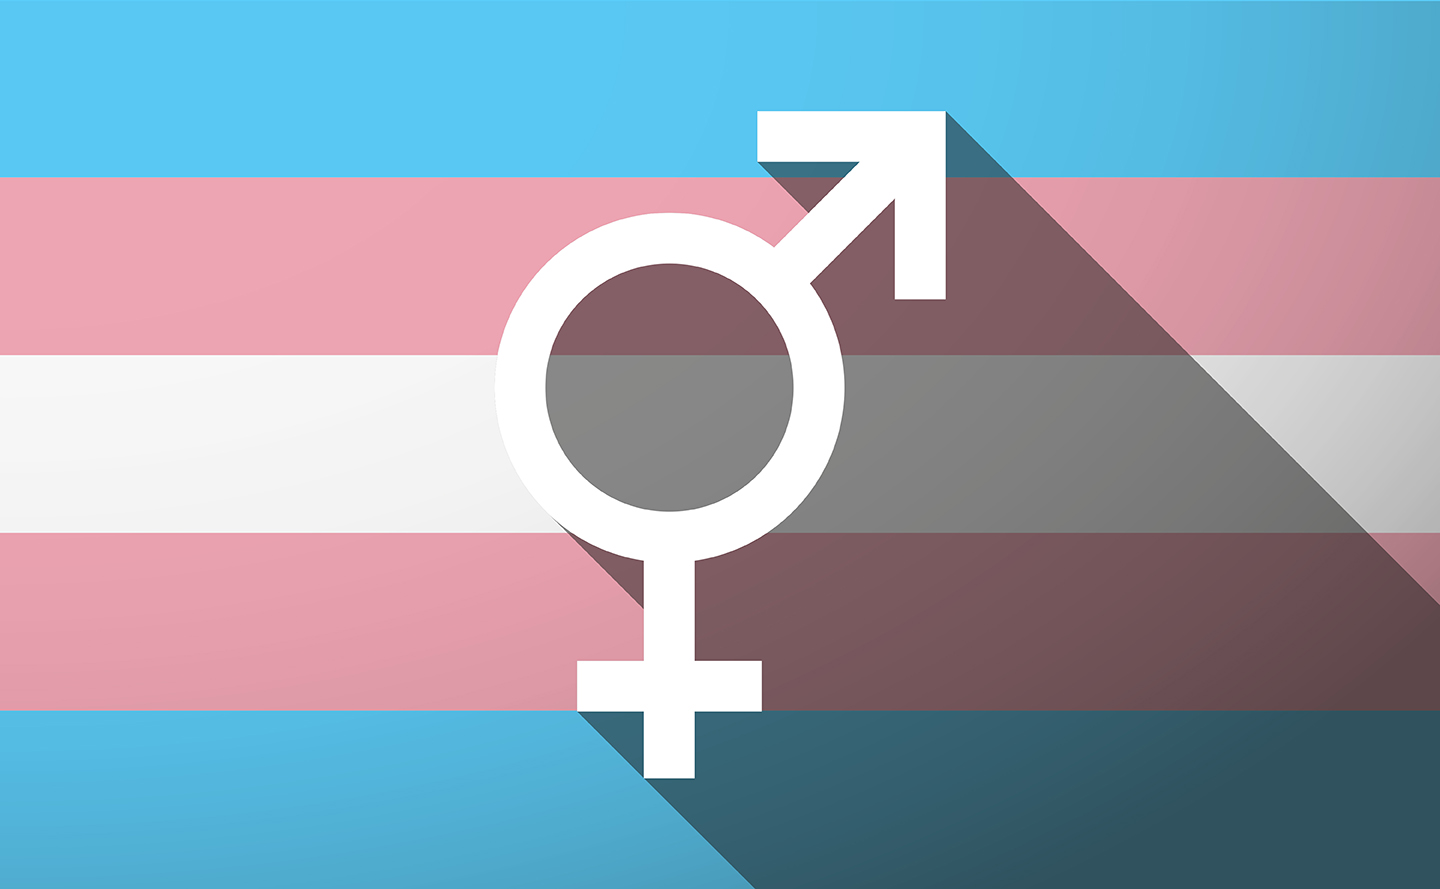 image of a transgender flag and symbol